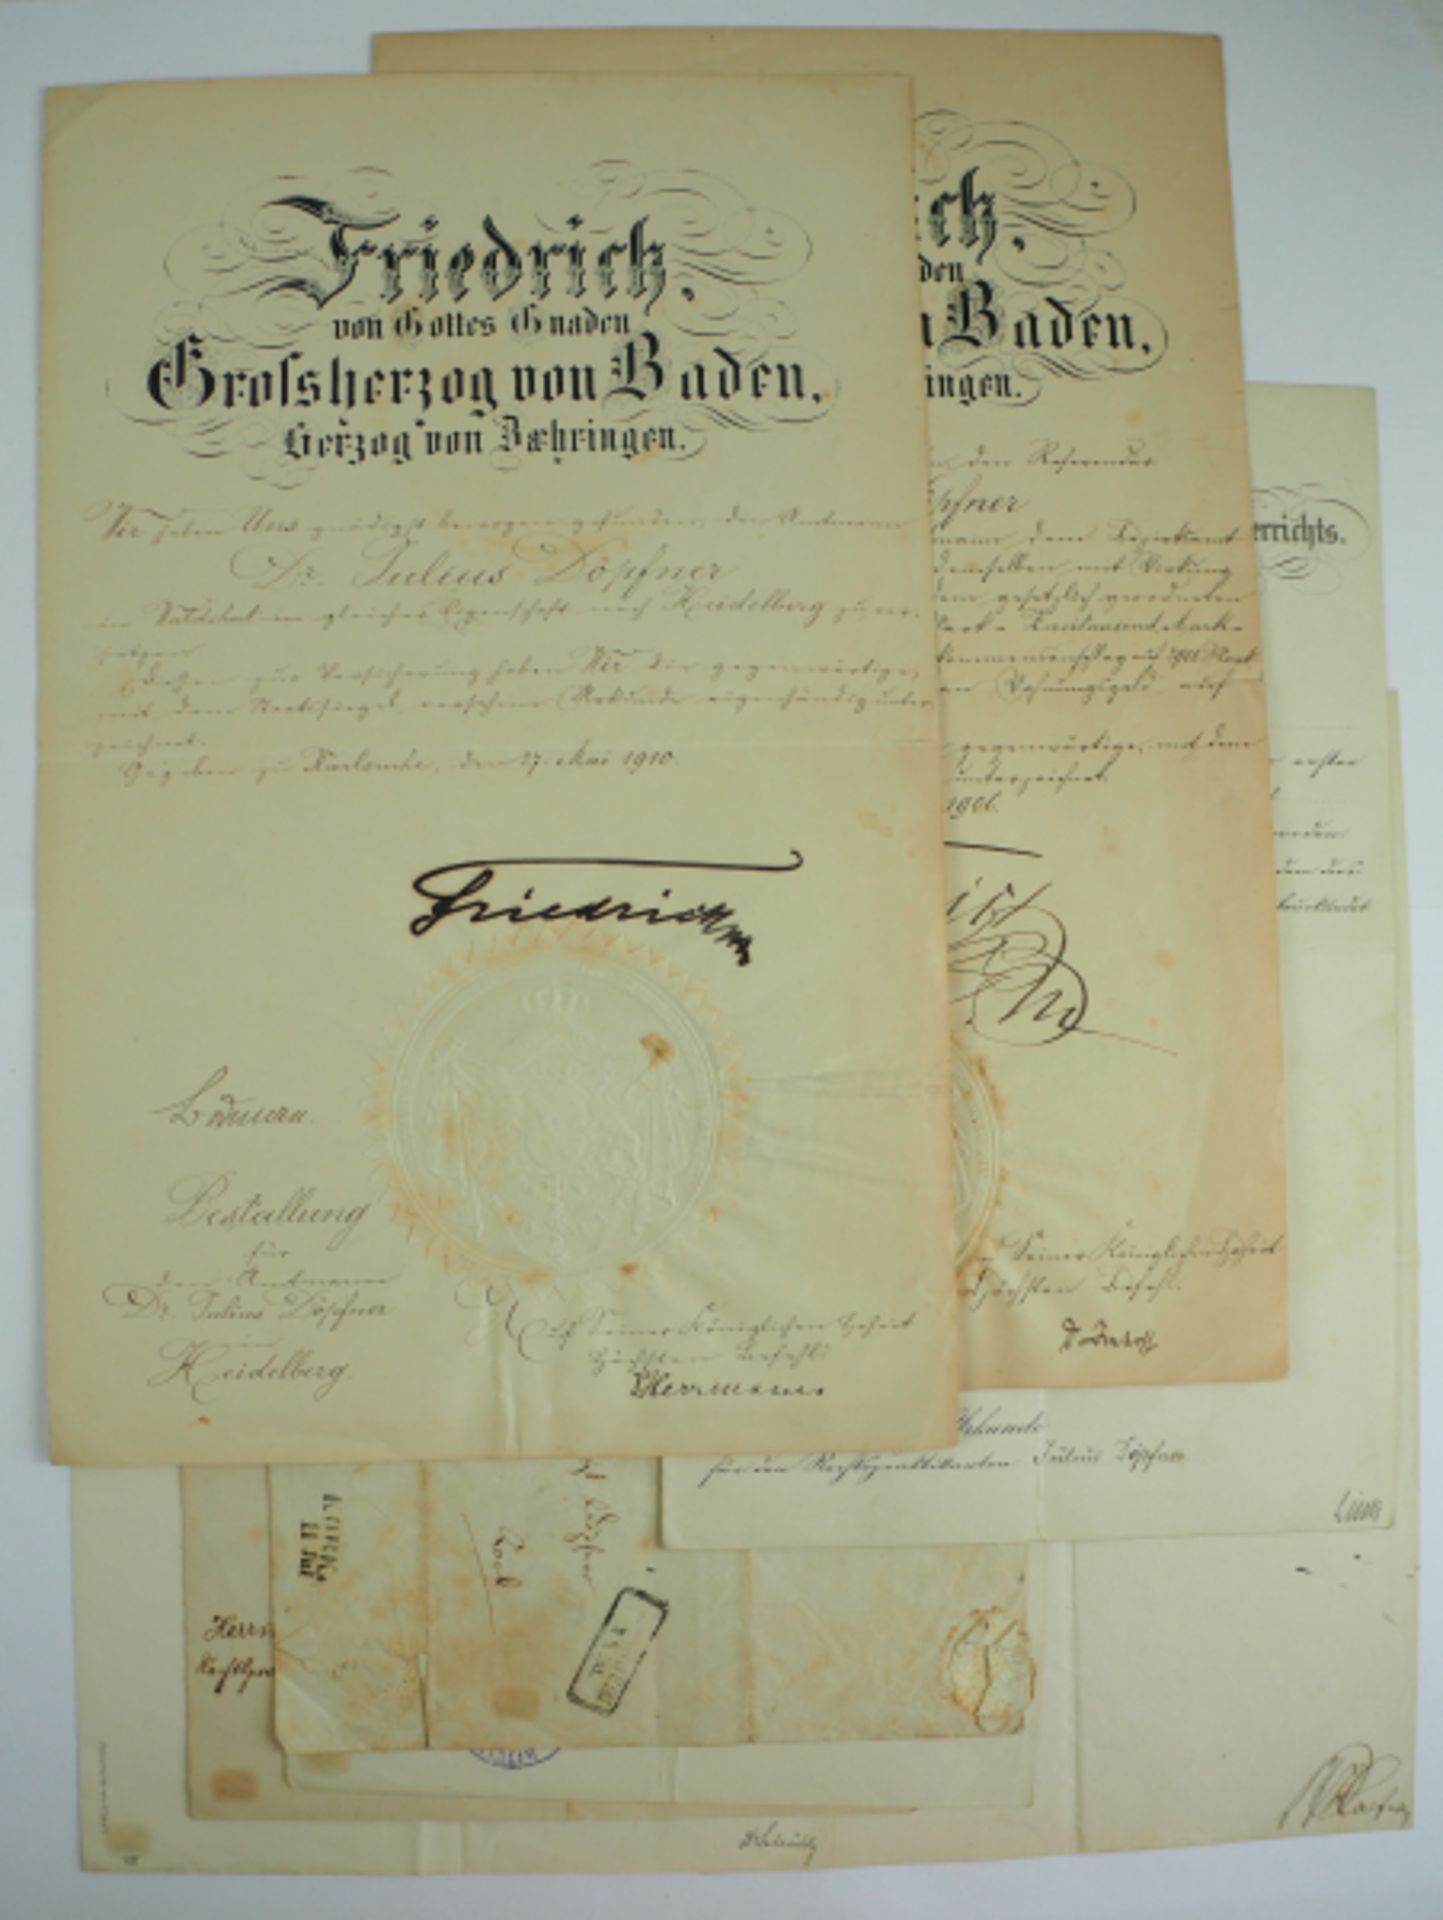 Baden: Urkundennachlass des Amtmann Dr. J.D. in Heidelberg.- Patent zum Amtmann in Heidelberg (